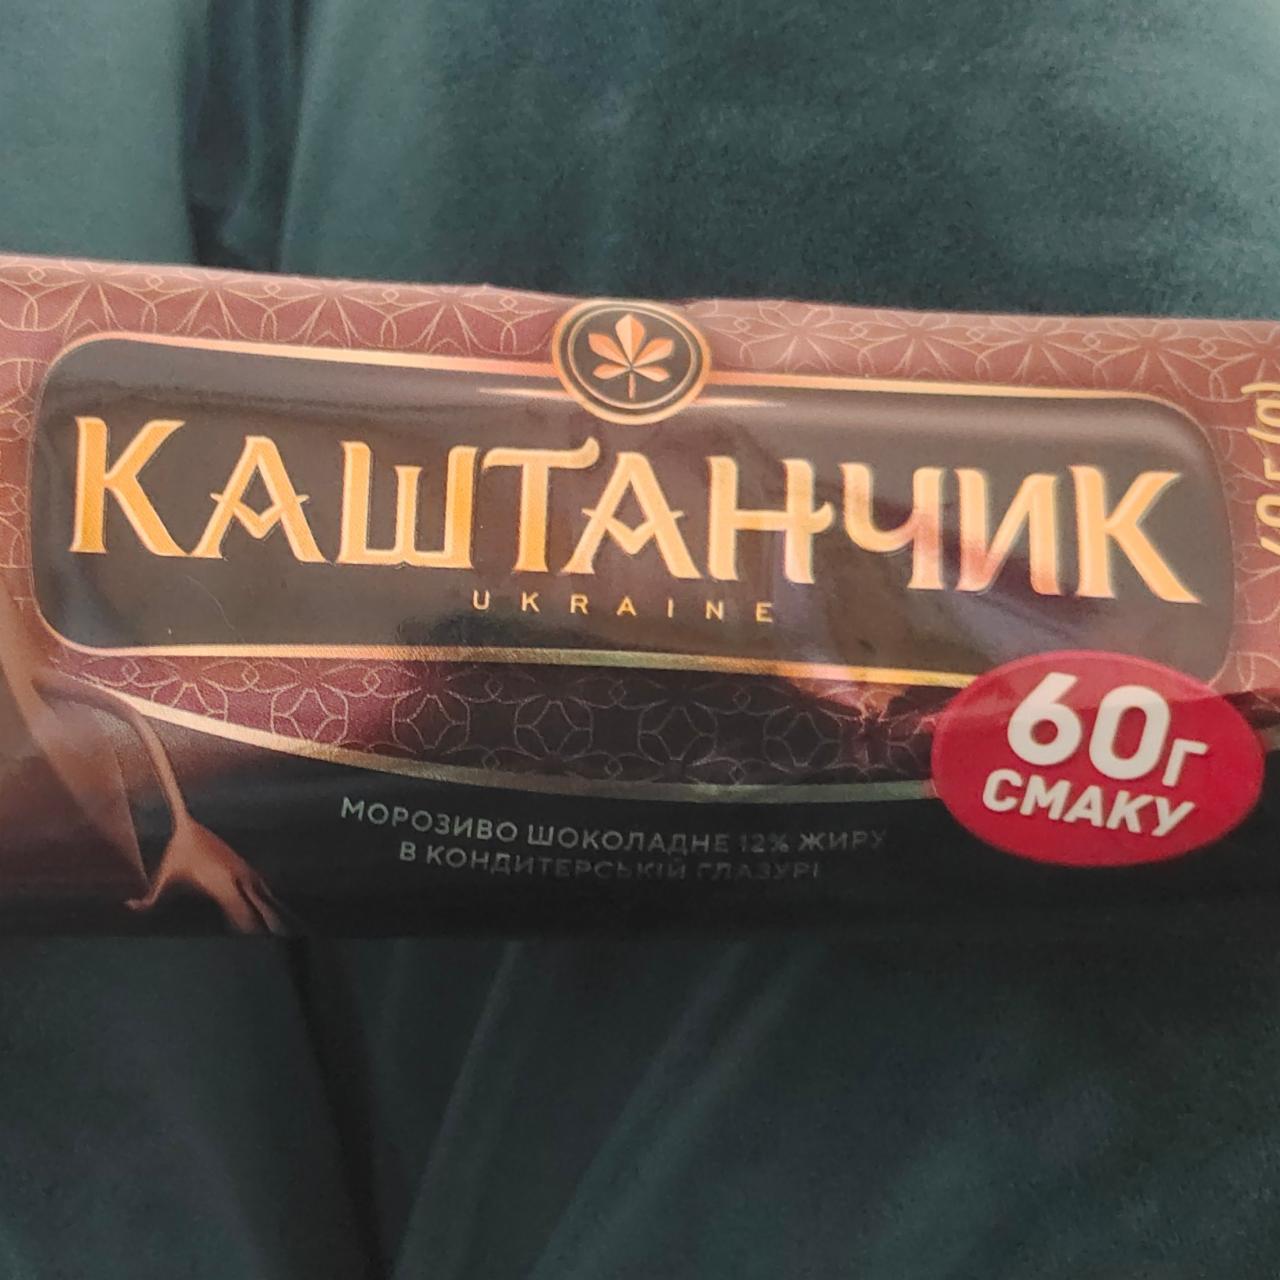 Фото - Мороженое шоколадное 12% в кондитерской глазури Каштанчик Хладик